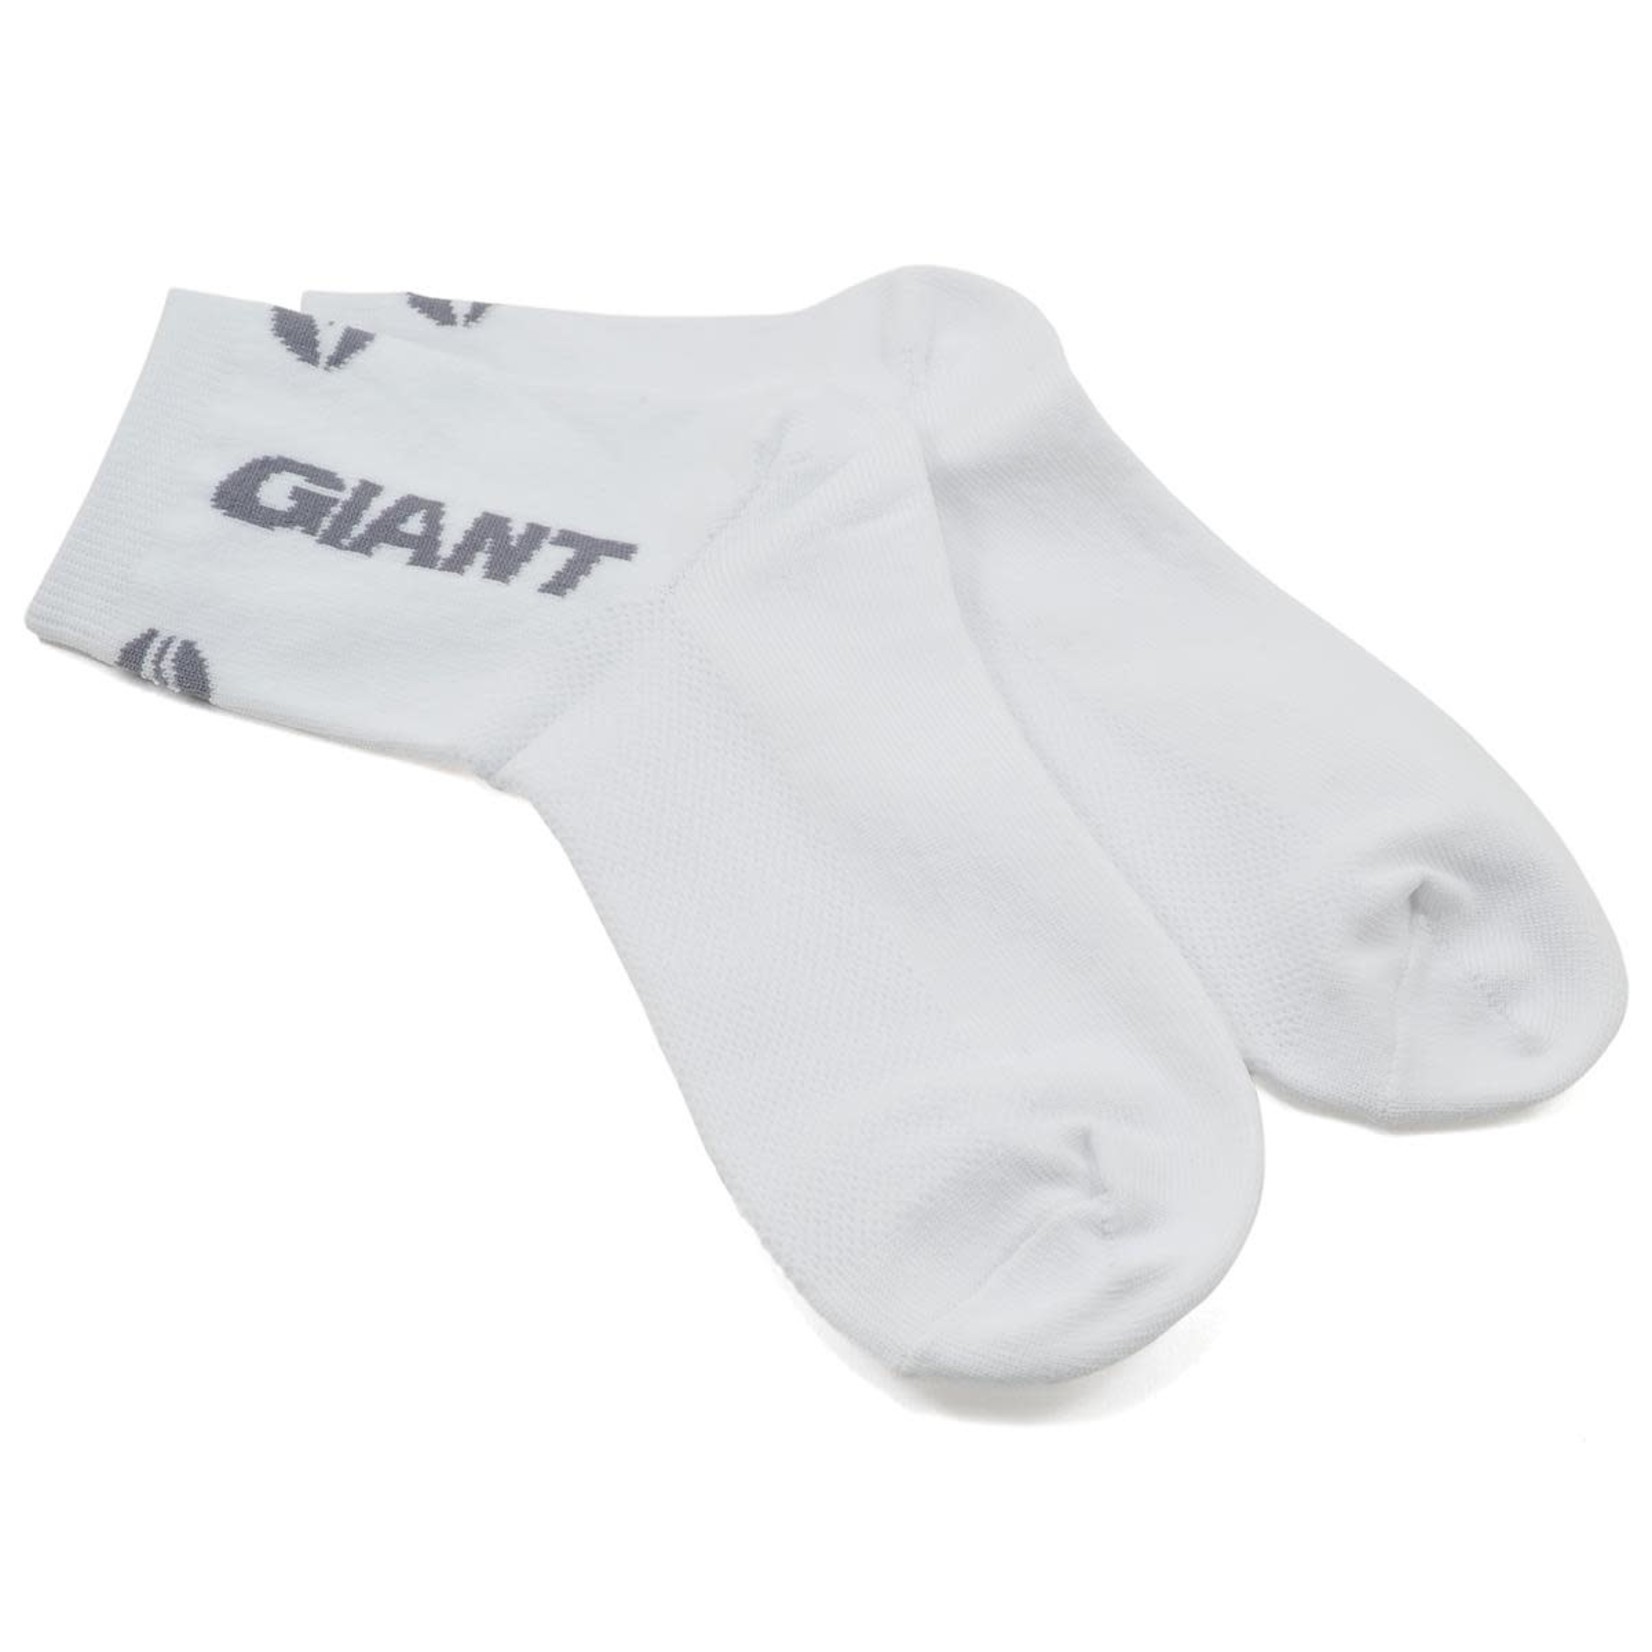 Giant GNT Ally Quarter Socks